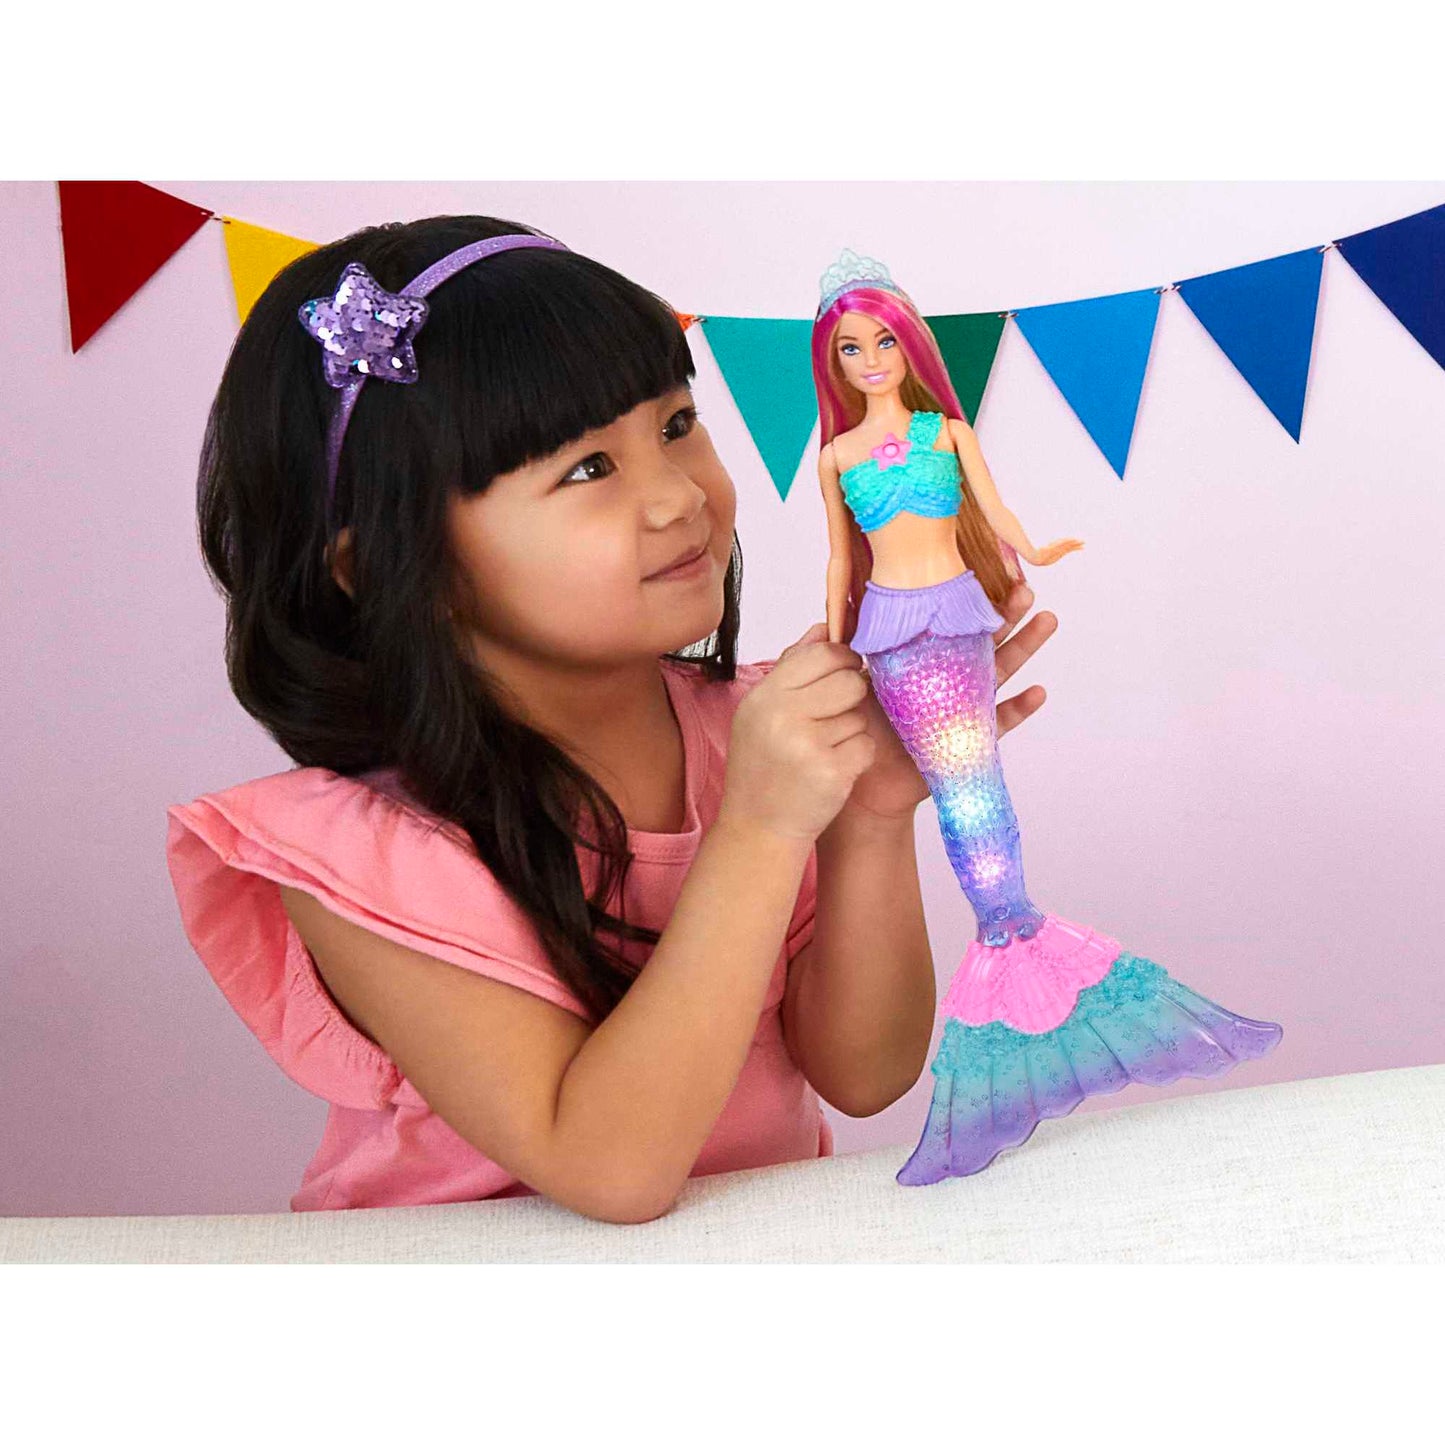 Barbie Dreamtopia Twinkle Lights Mermaid Doll - Assorted*